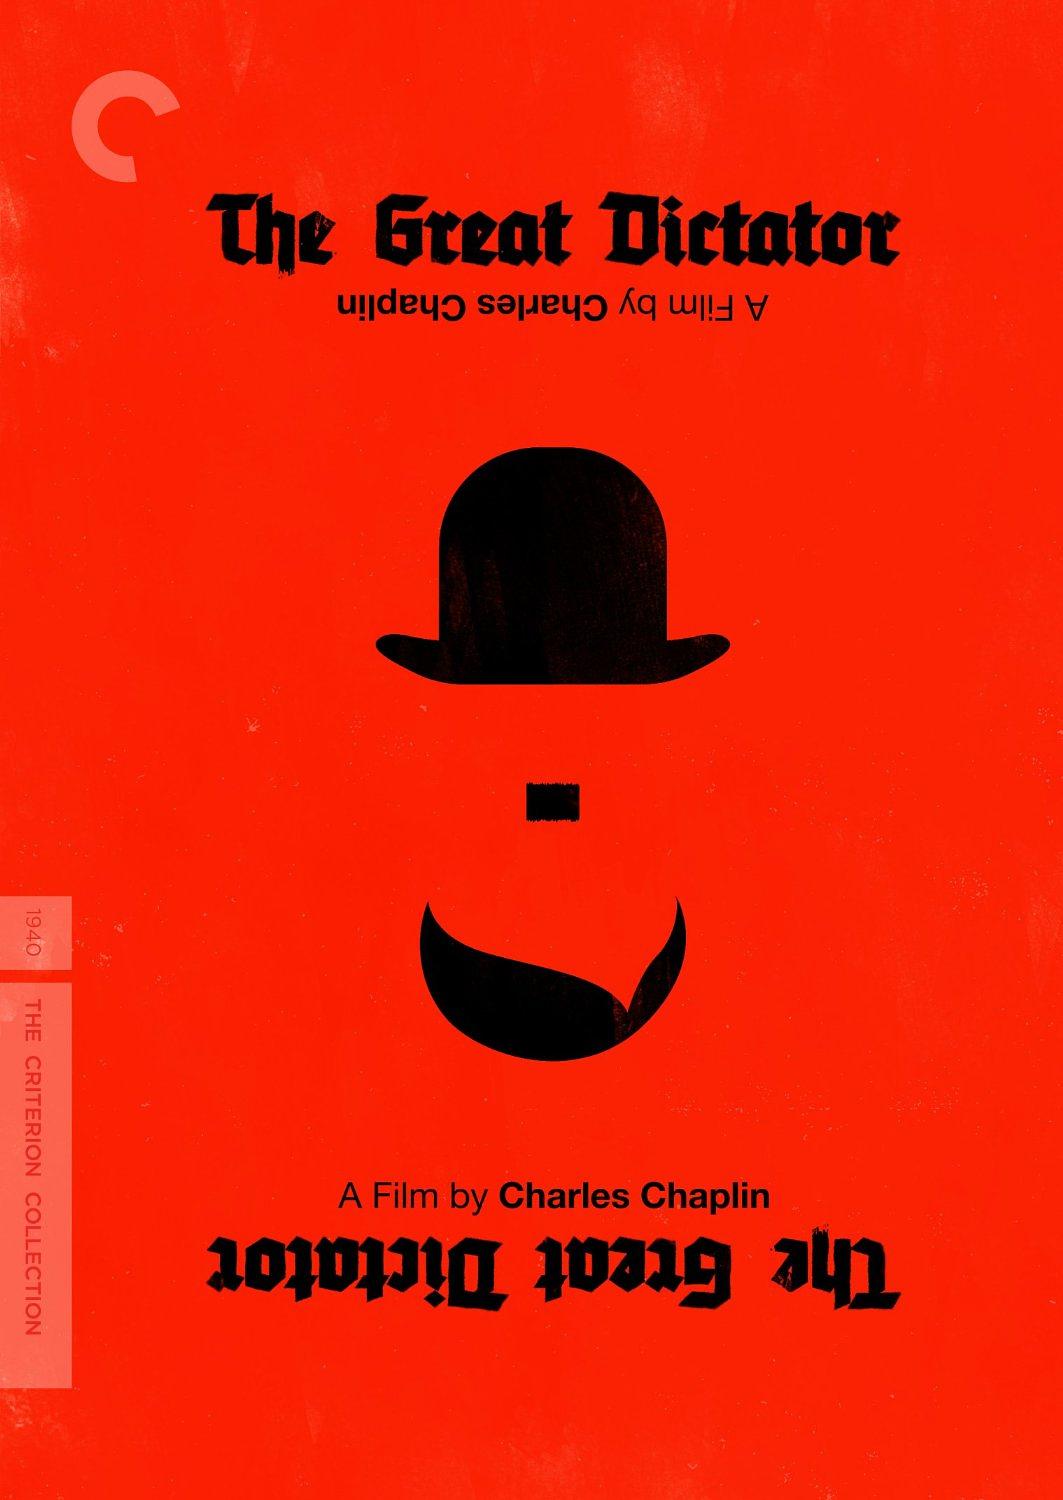 大独裁者 蓝光原盘下载+高清MKV版/The Dictator / El gran dictador 1940 The Great Dictator 44.2G